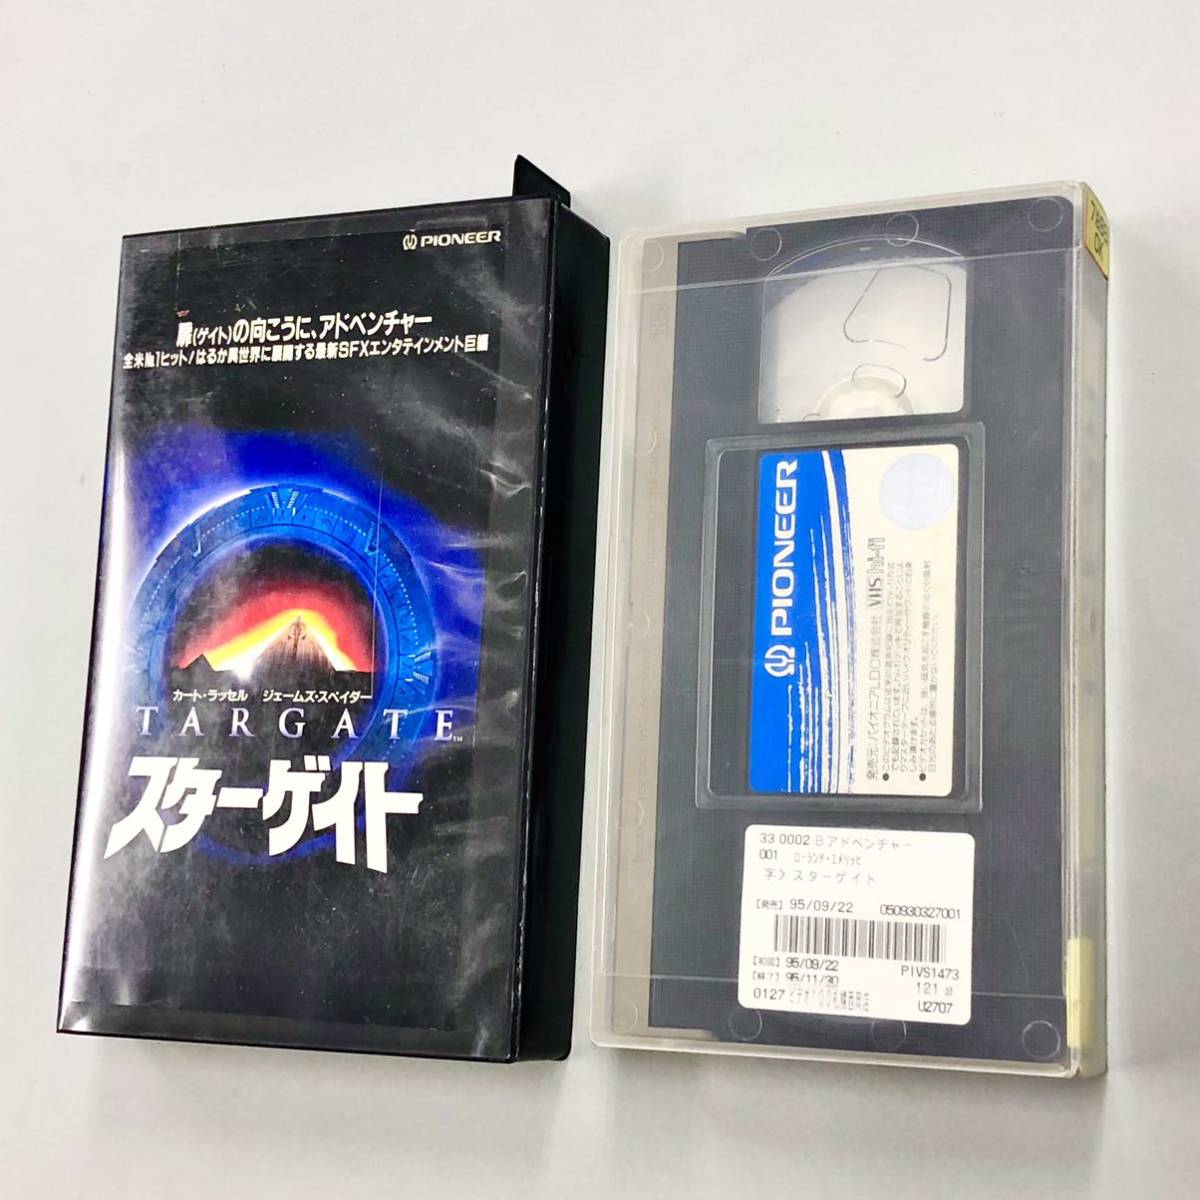  быстрое решение!VHS[ Star gate : Roland *emelihi Cart * russell ] стоимость доставки 150 иен!